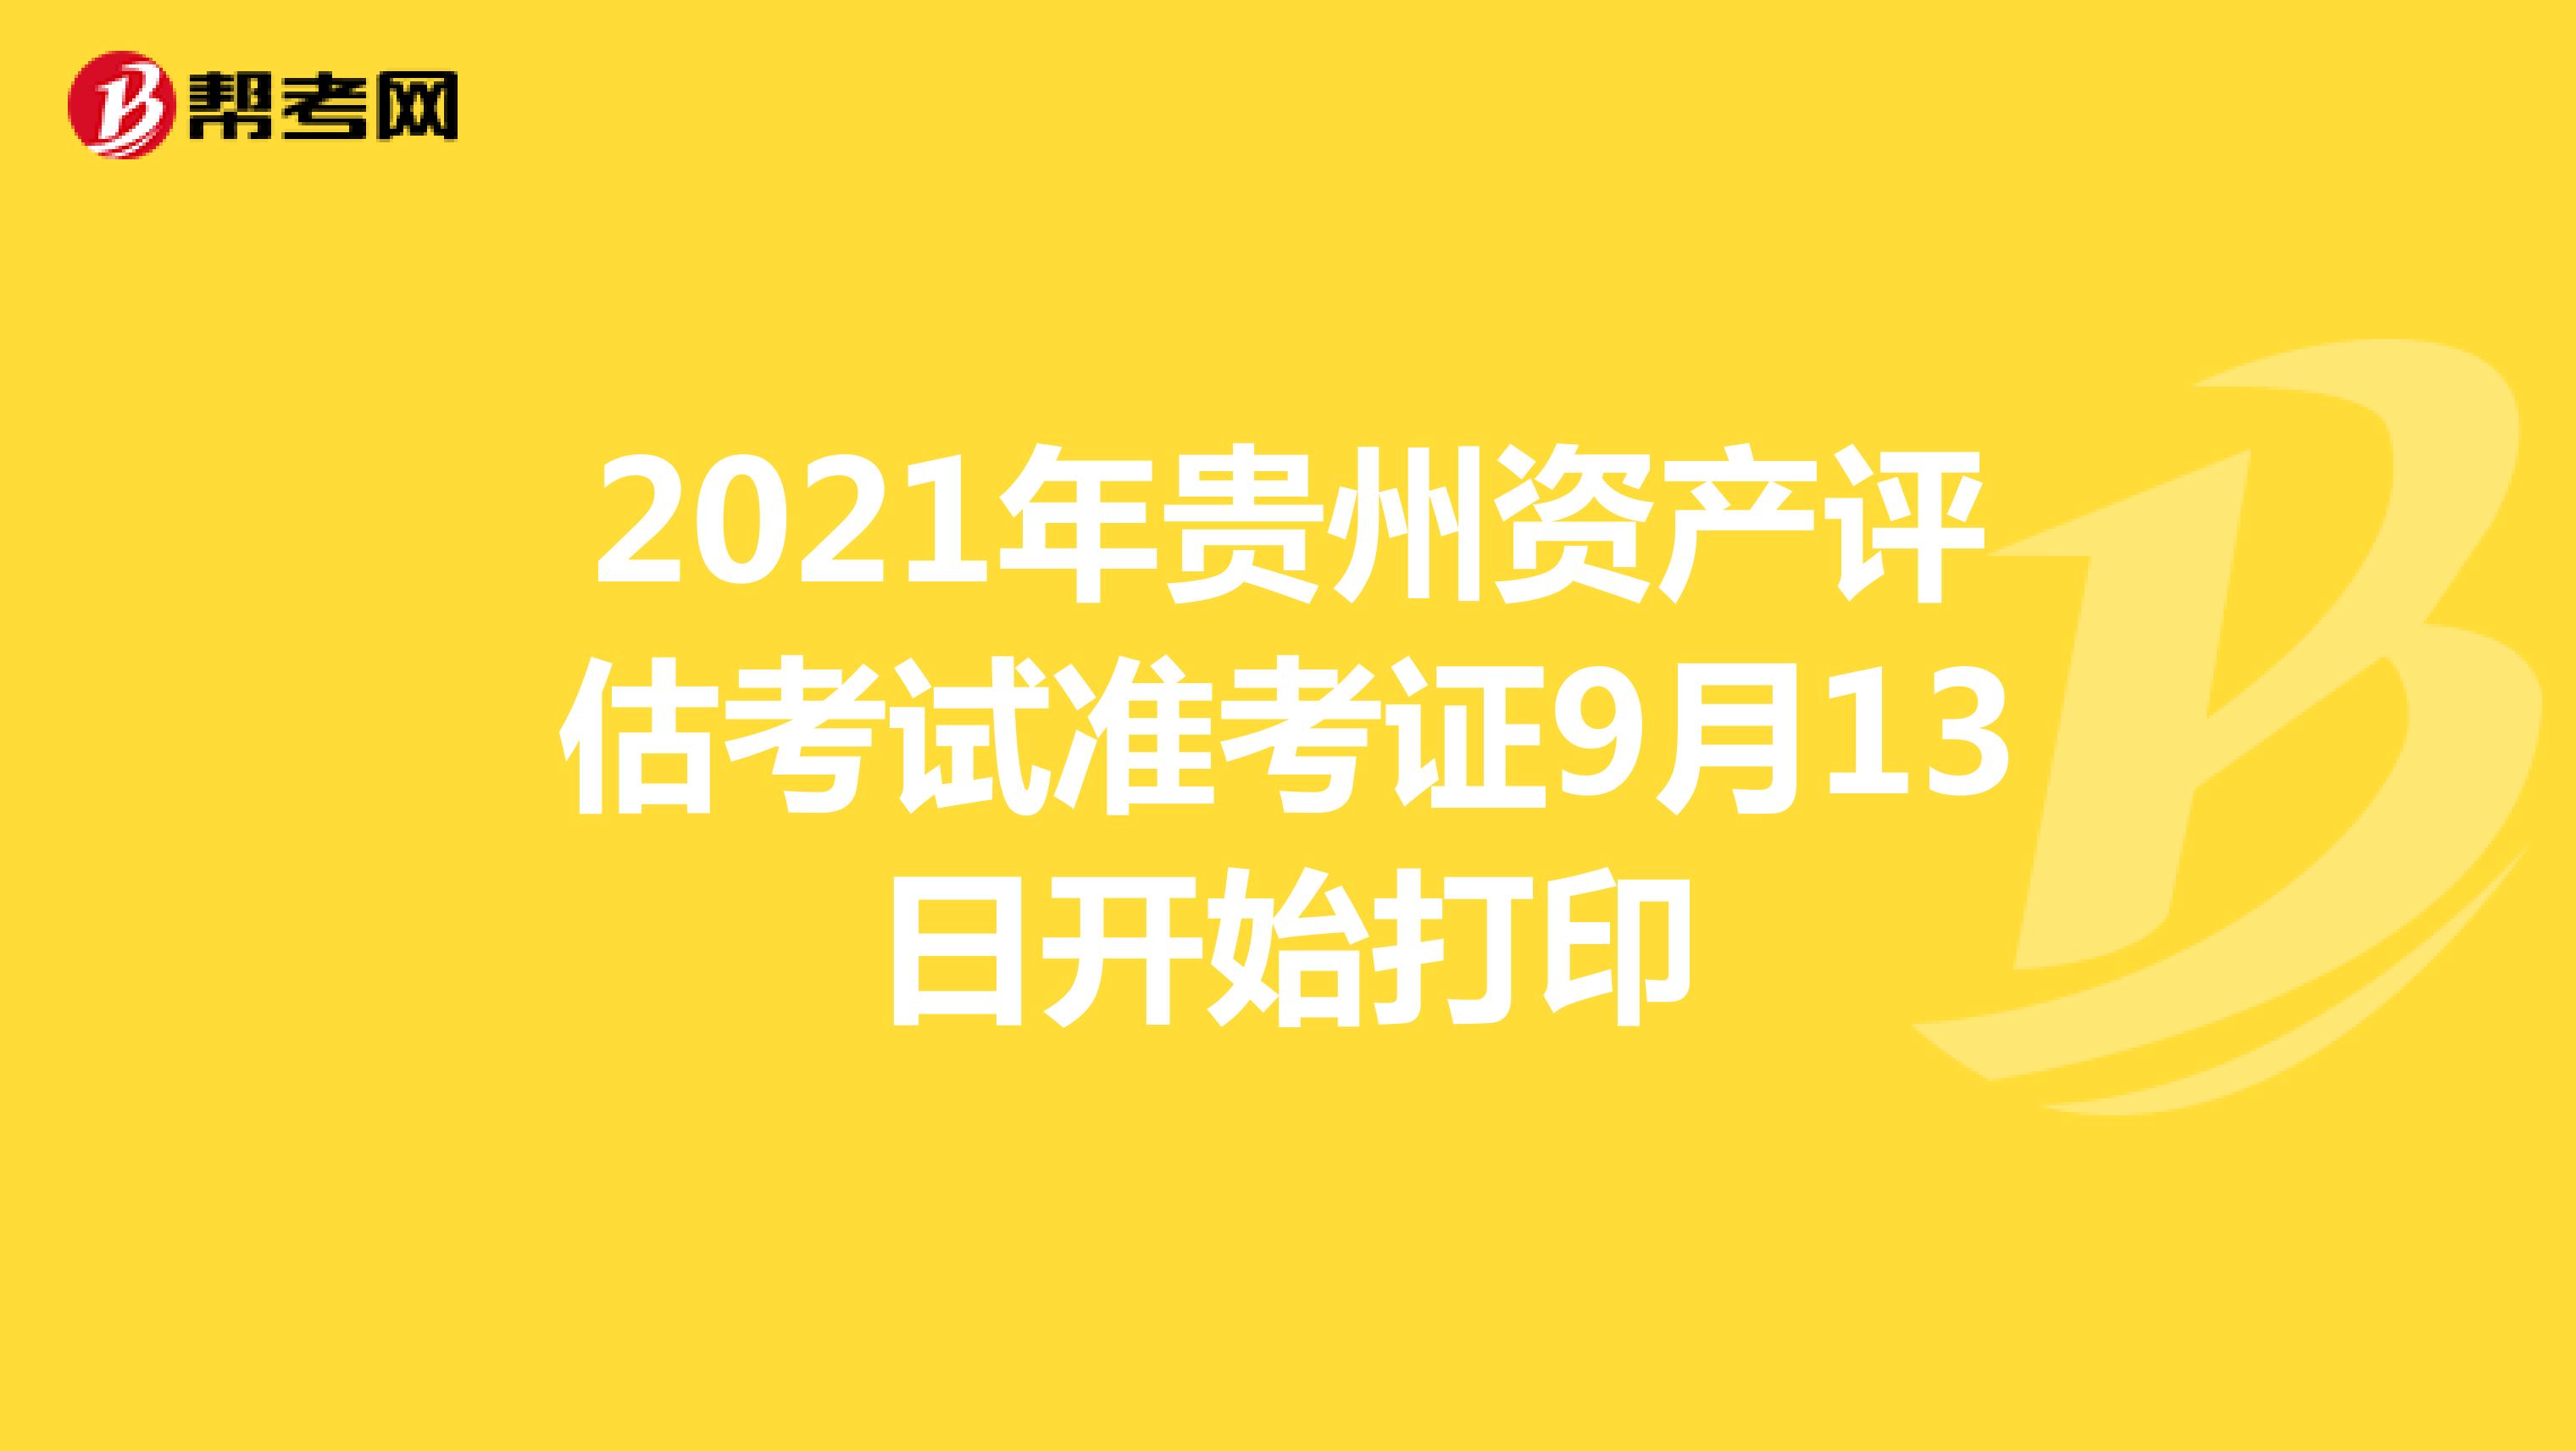 2021年贵州资产评估师考试准考证9月13日开始打印